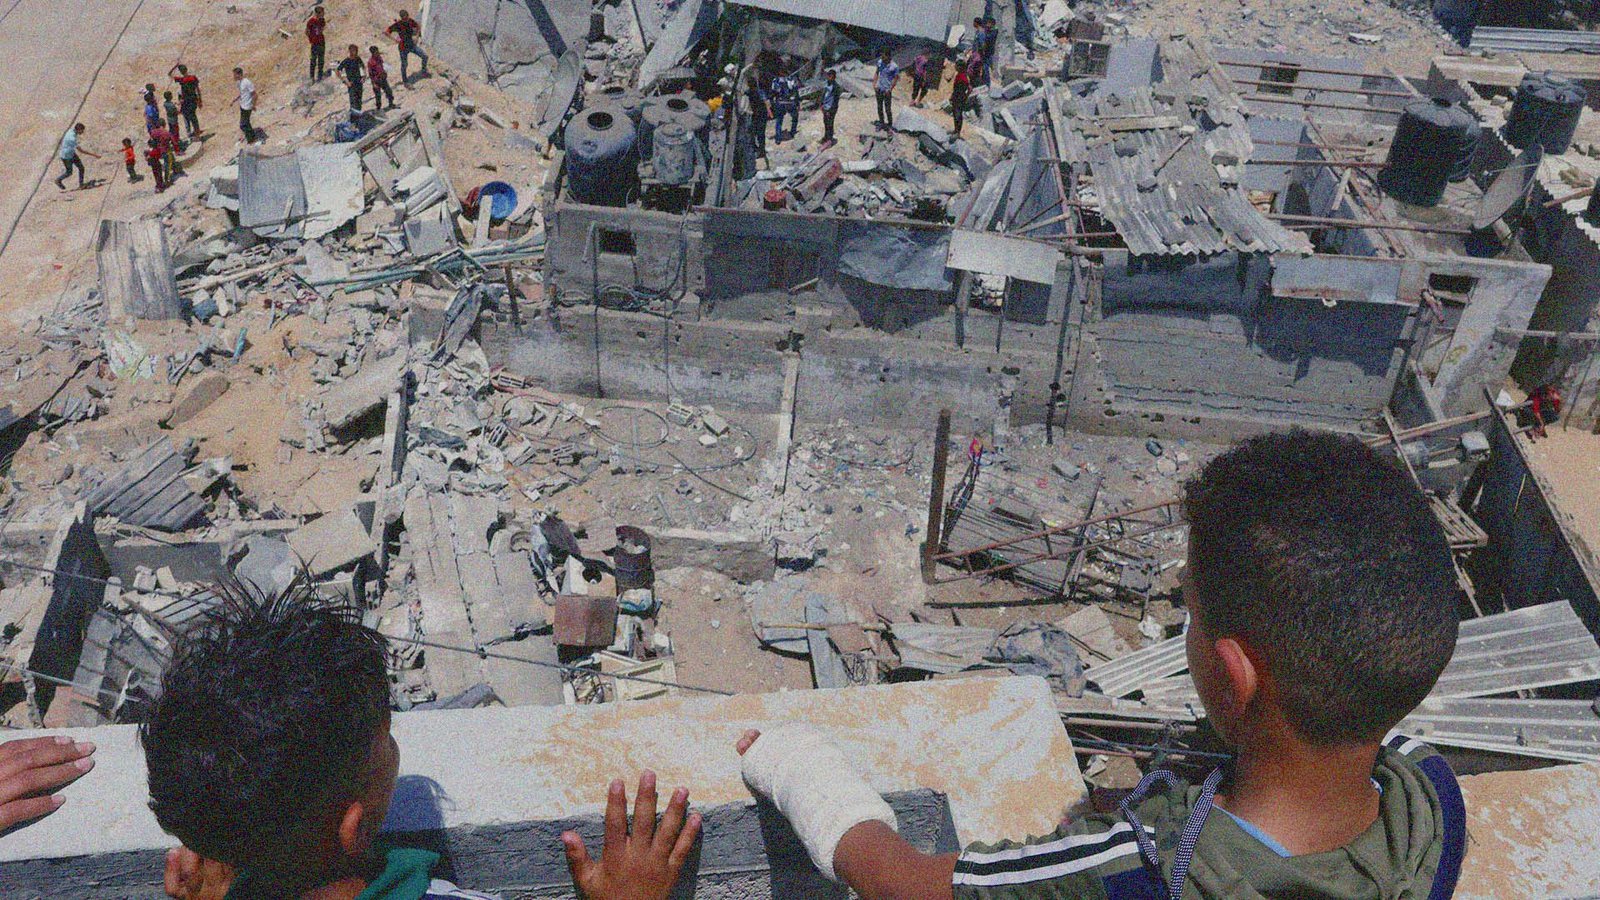 013_palestinsk-familj-ruinen-av-hus-rivits.jpg